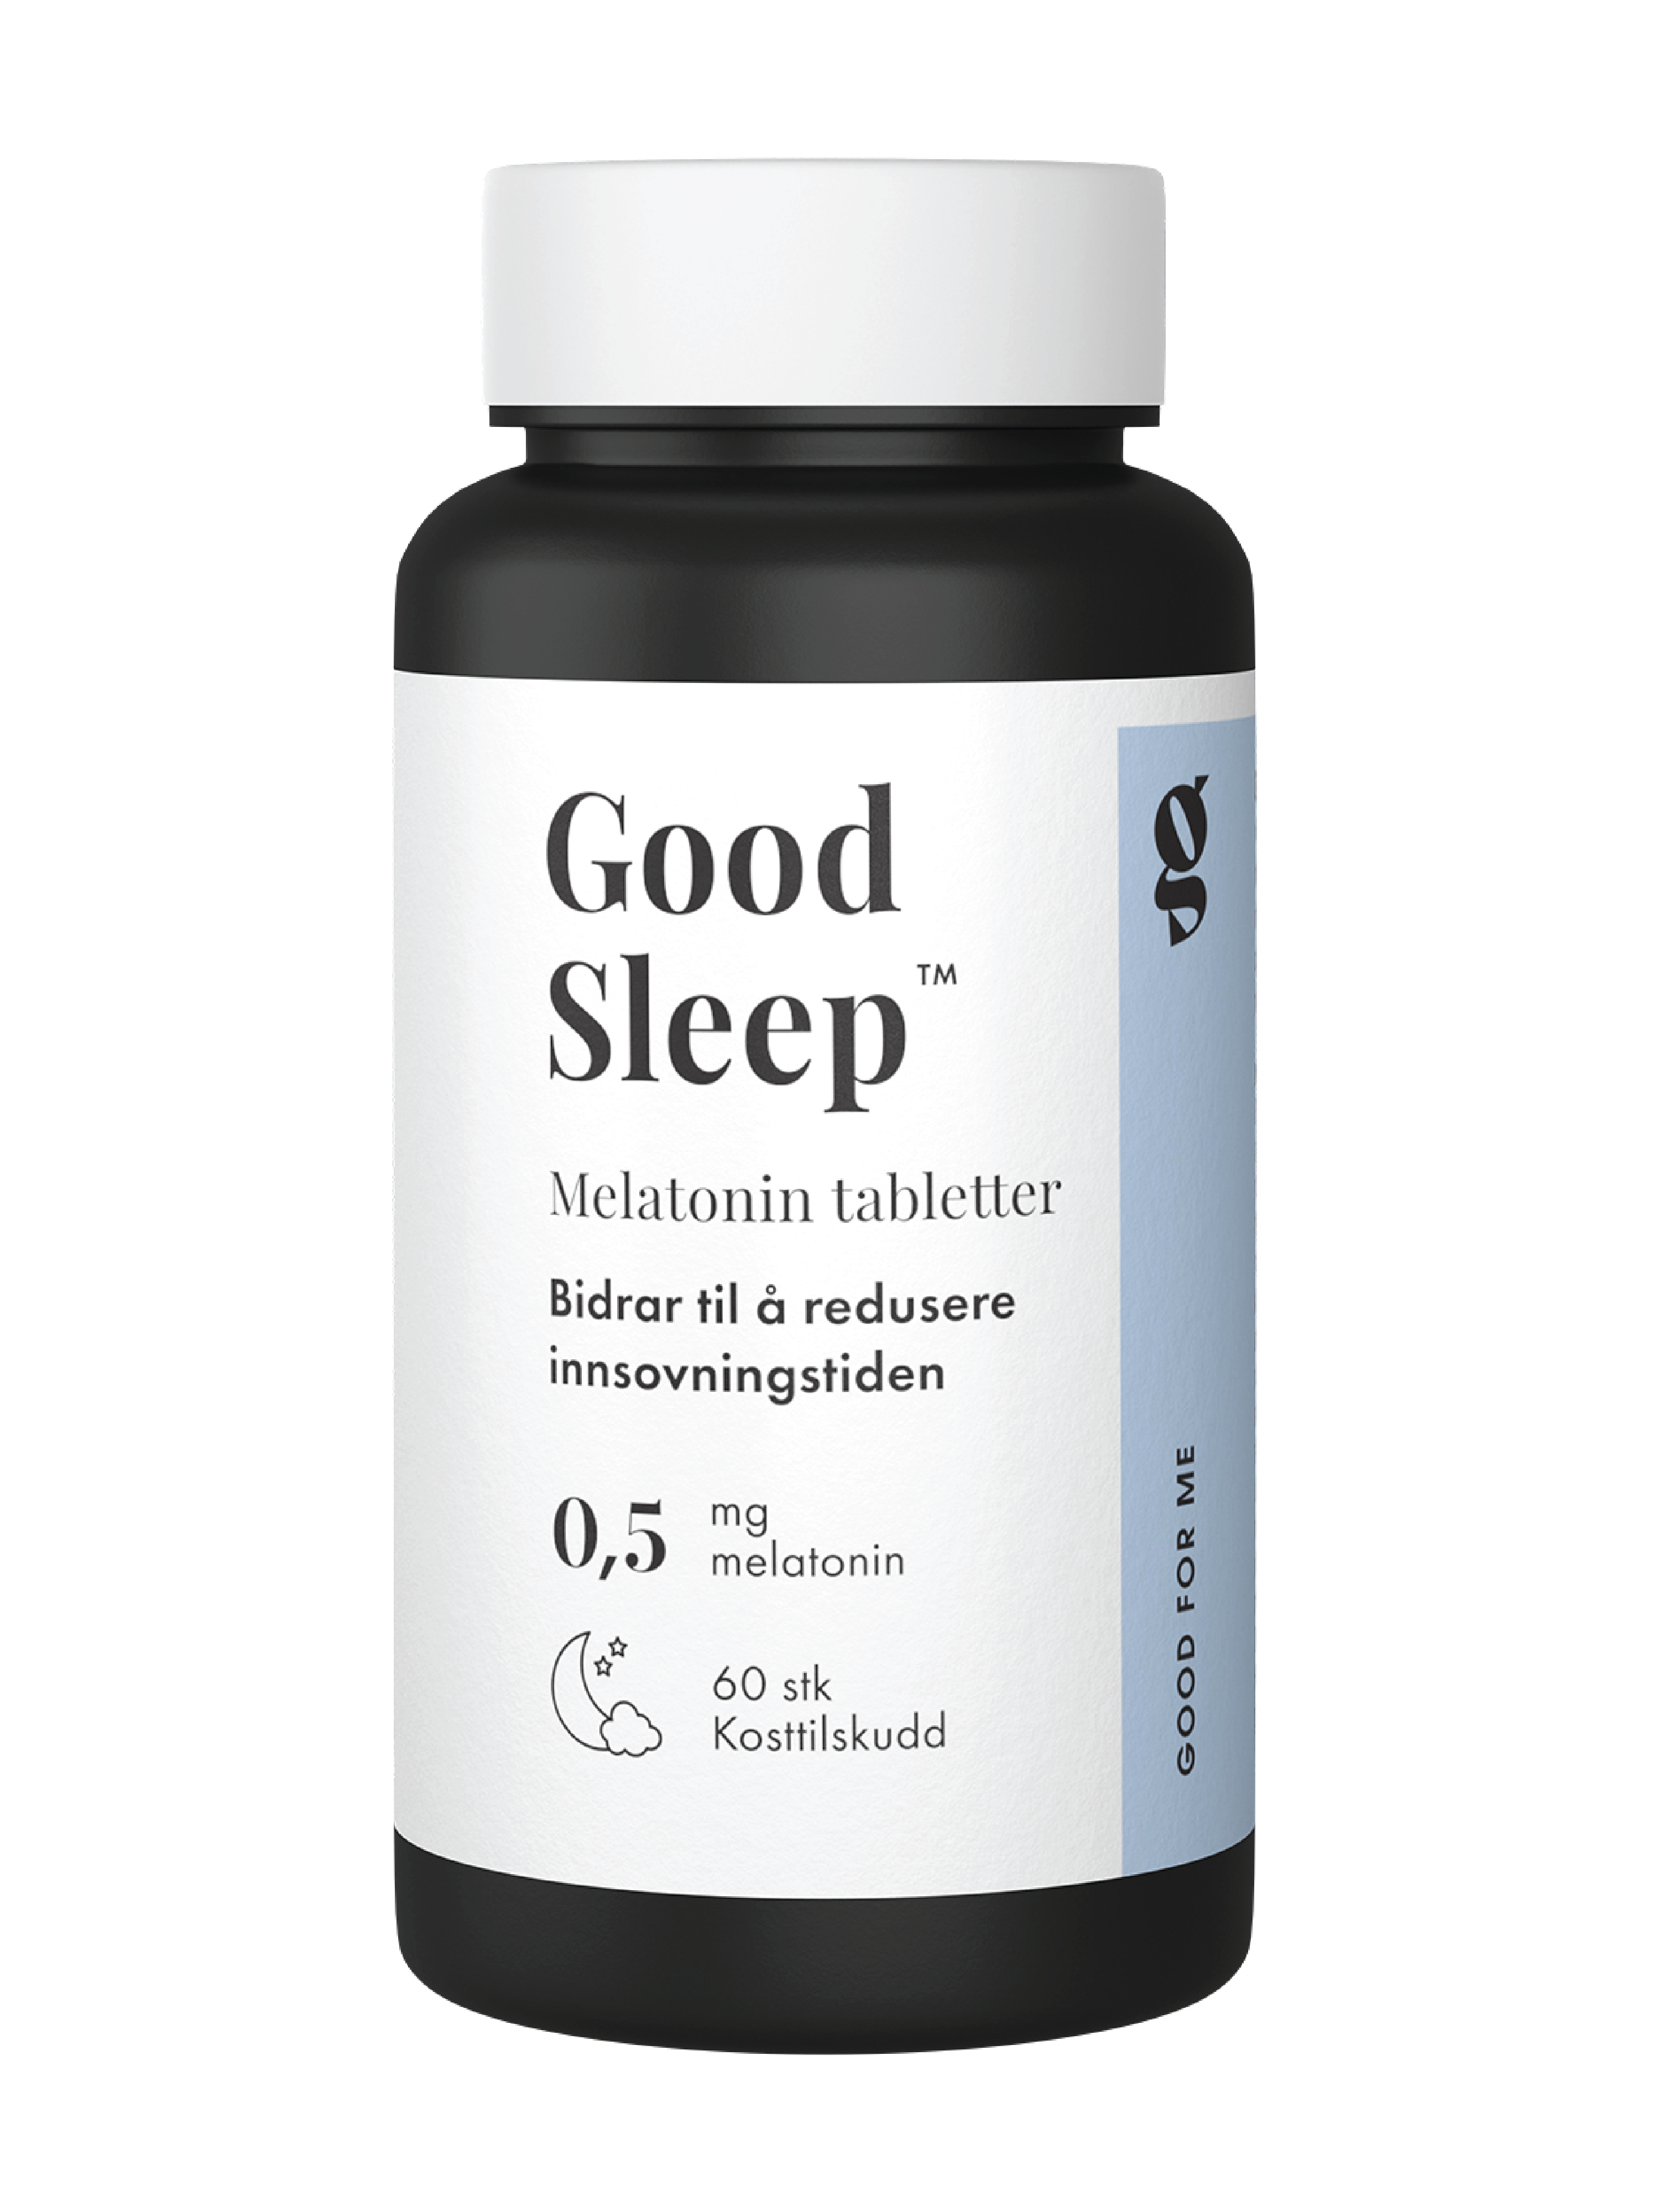 Good For Me Good Sleep 0,5 mg Melatonin tabletter, 60 stk.